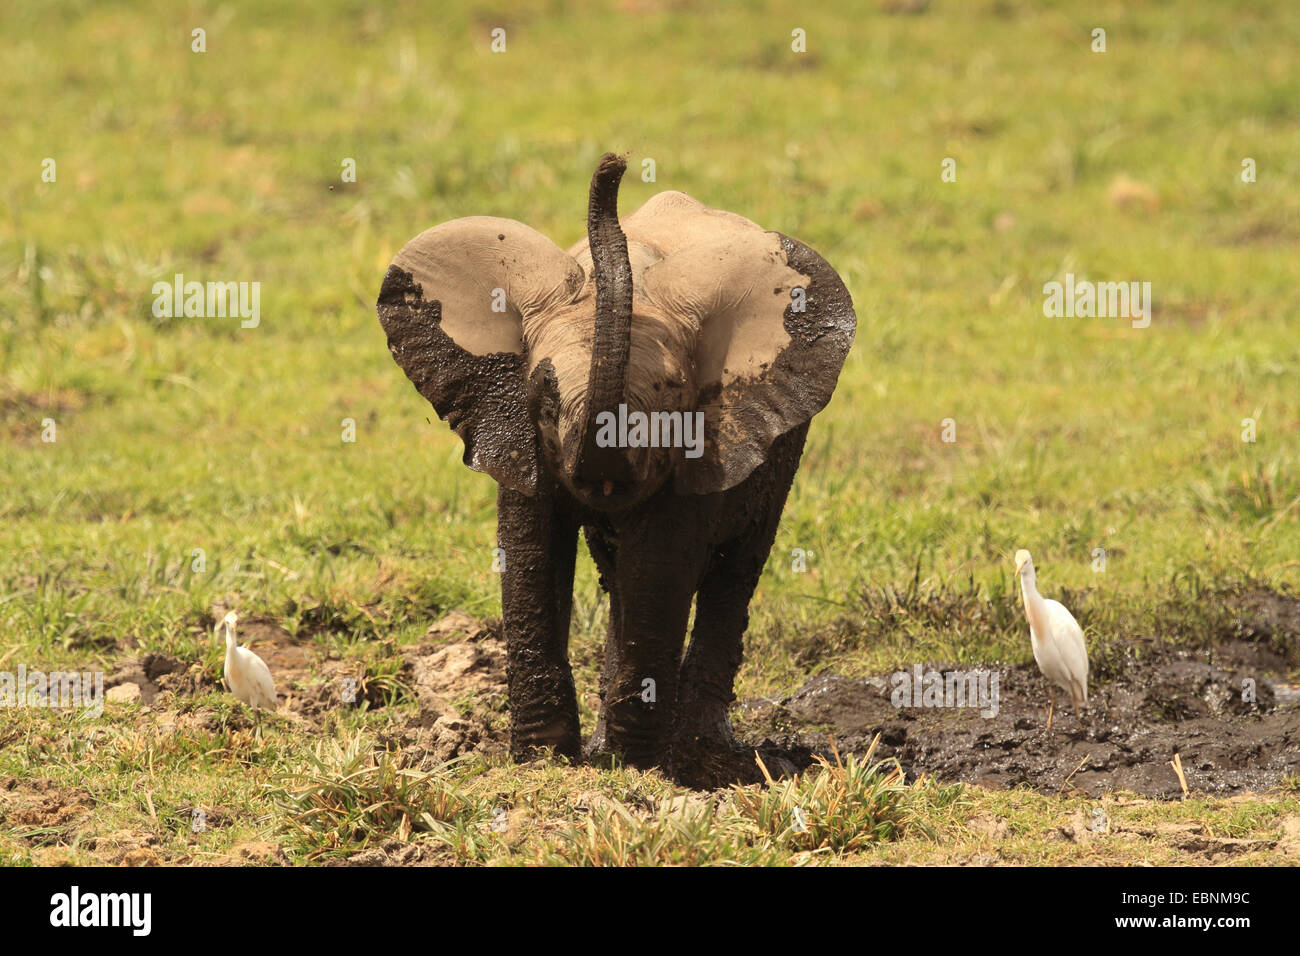 African elephant (Loxodonta africana), after mud bath, Kenya, Amboseli National Park Stock Photo